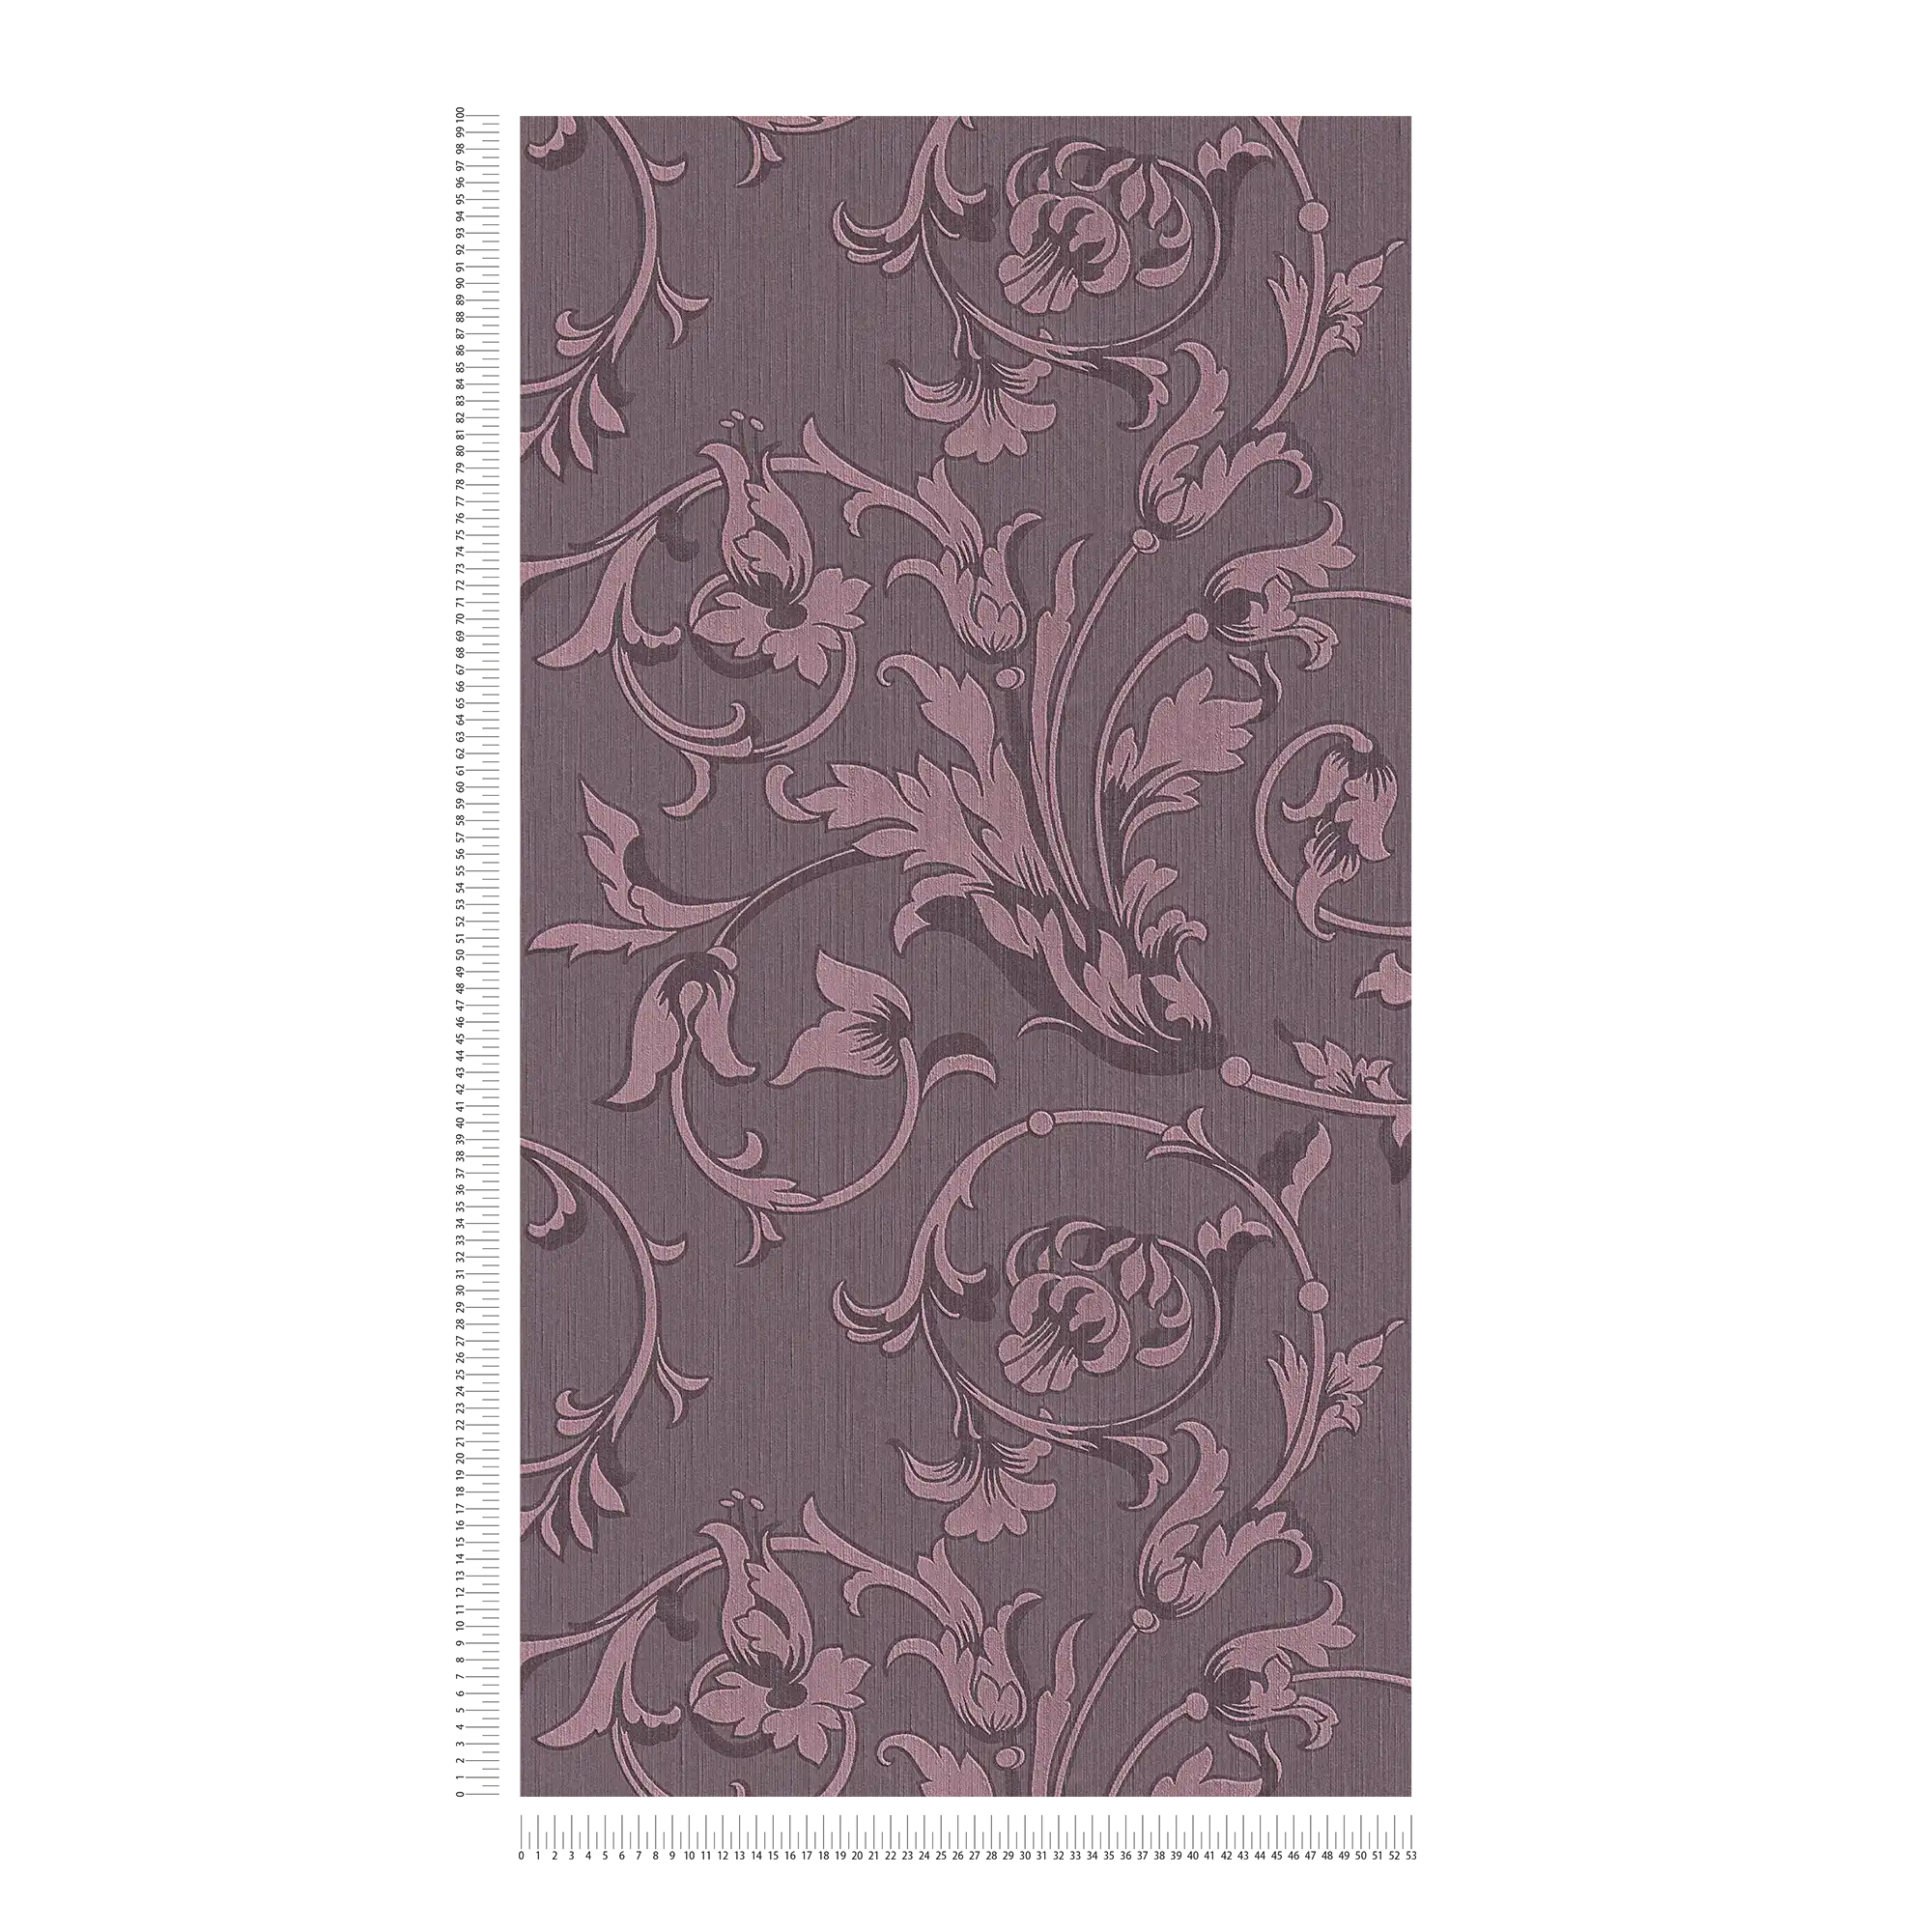             Papel pintado ornamental con óptica textil de seda - violeta
        